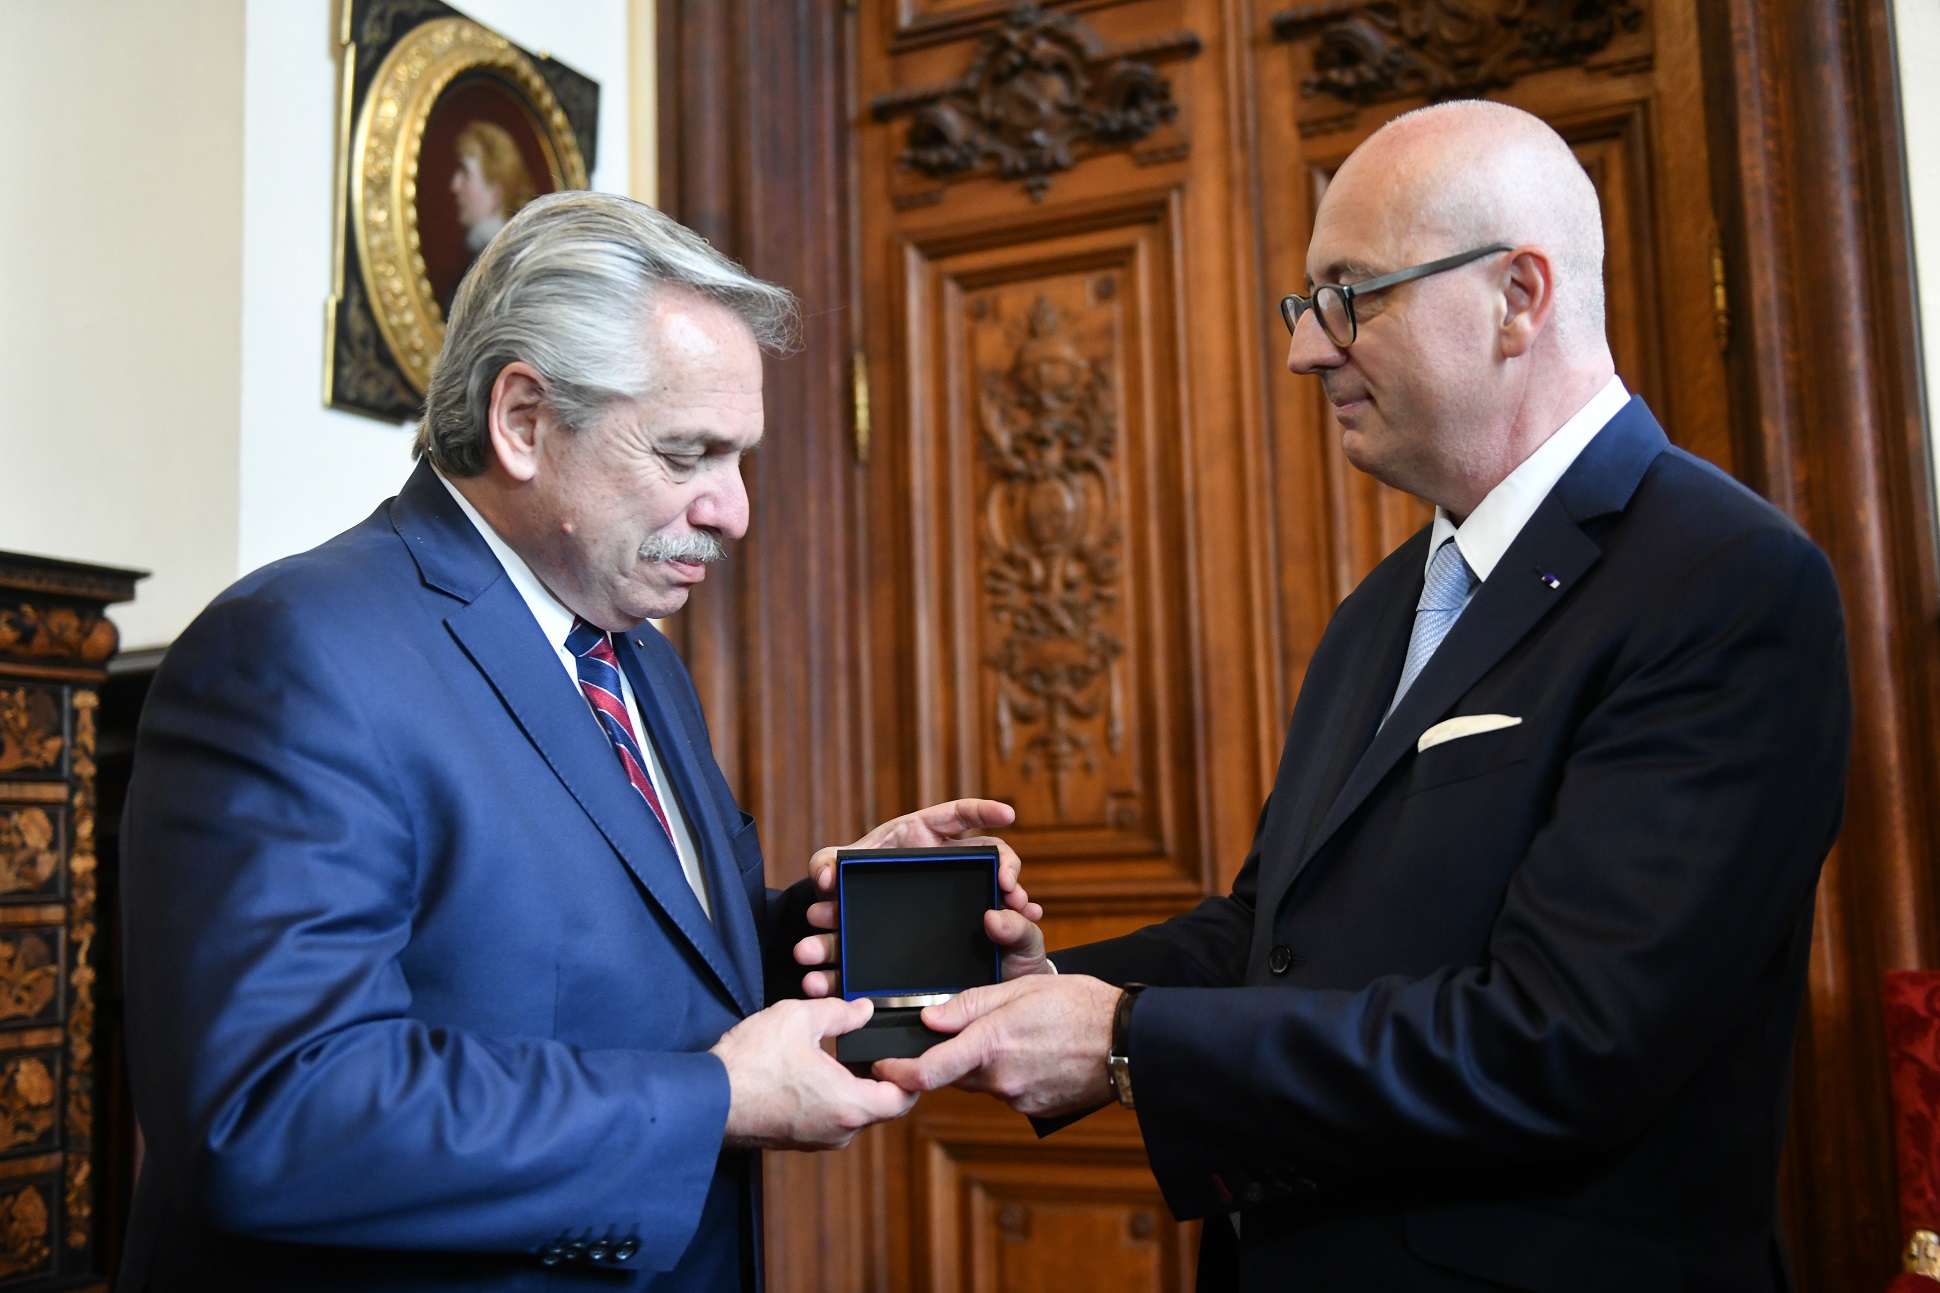 El presidente visitó la Universidad de La Sorbona, se reunió con el Consejo Académico y recibió una medalla